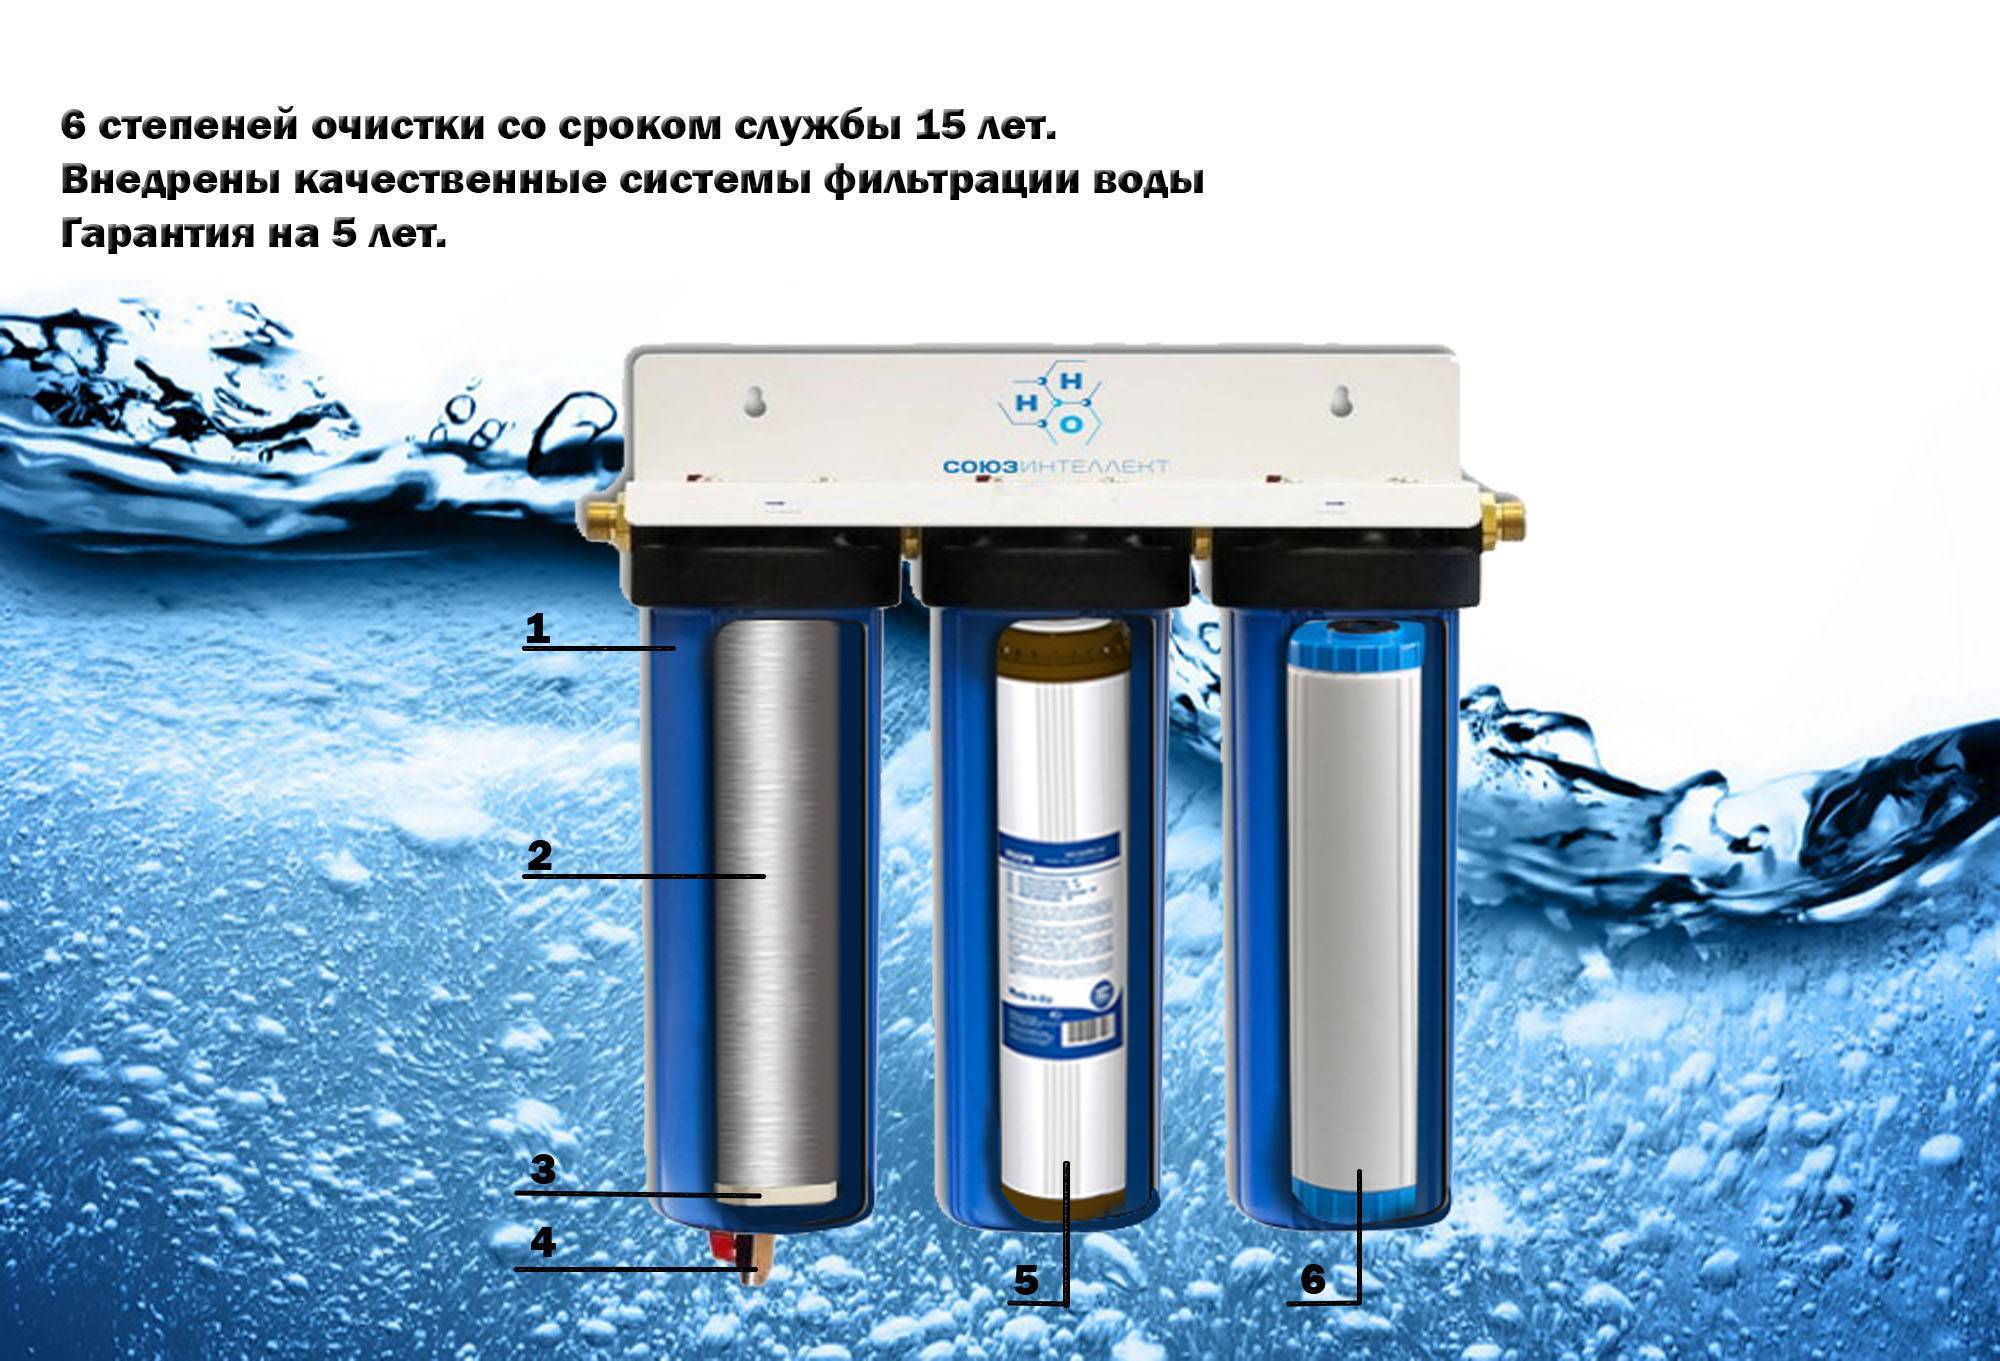 Титановая очистка воды. Аурус фильтр для воды. Титановый фильтр для очистки воды. Титановые фильтры для очистки воды из скважины. Степени очистки воды фильтрами.